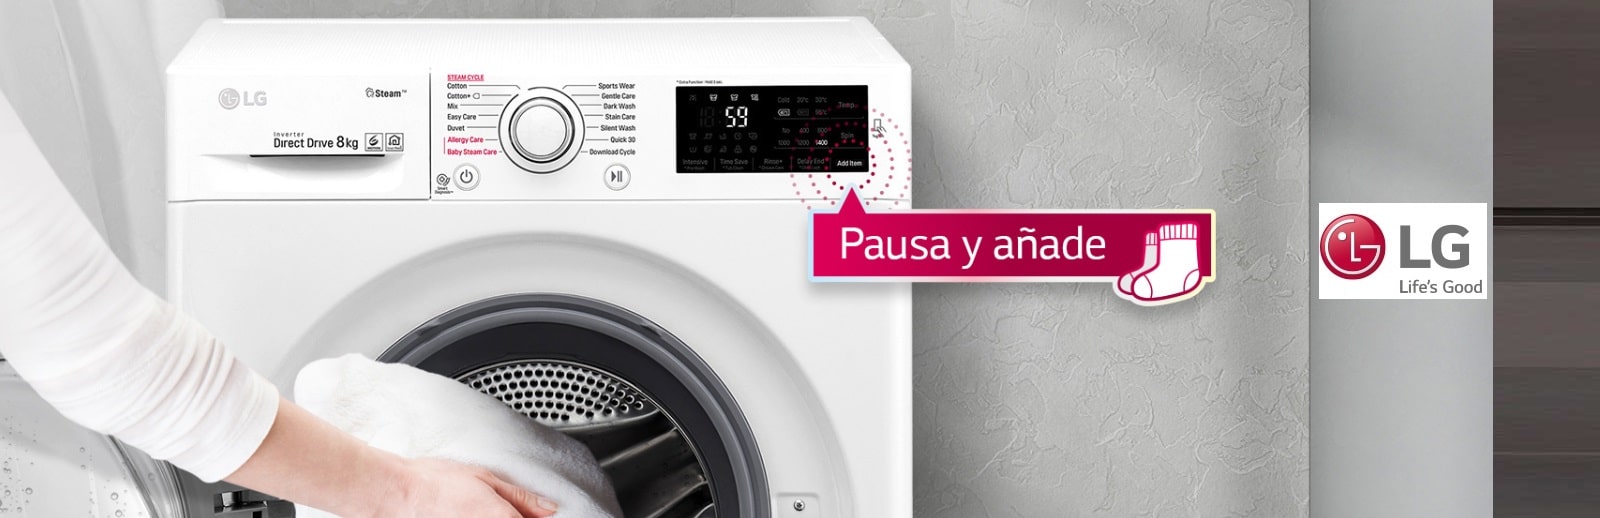 Red pimienta cansado Comprar lavadoras baratas LG | ElectroNow